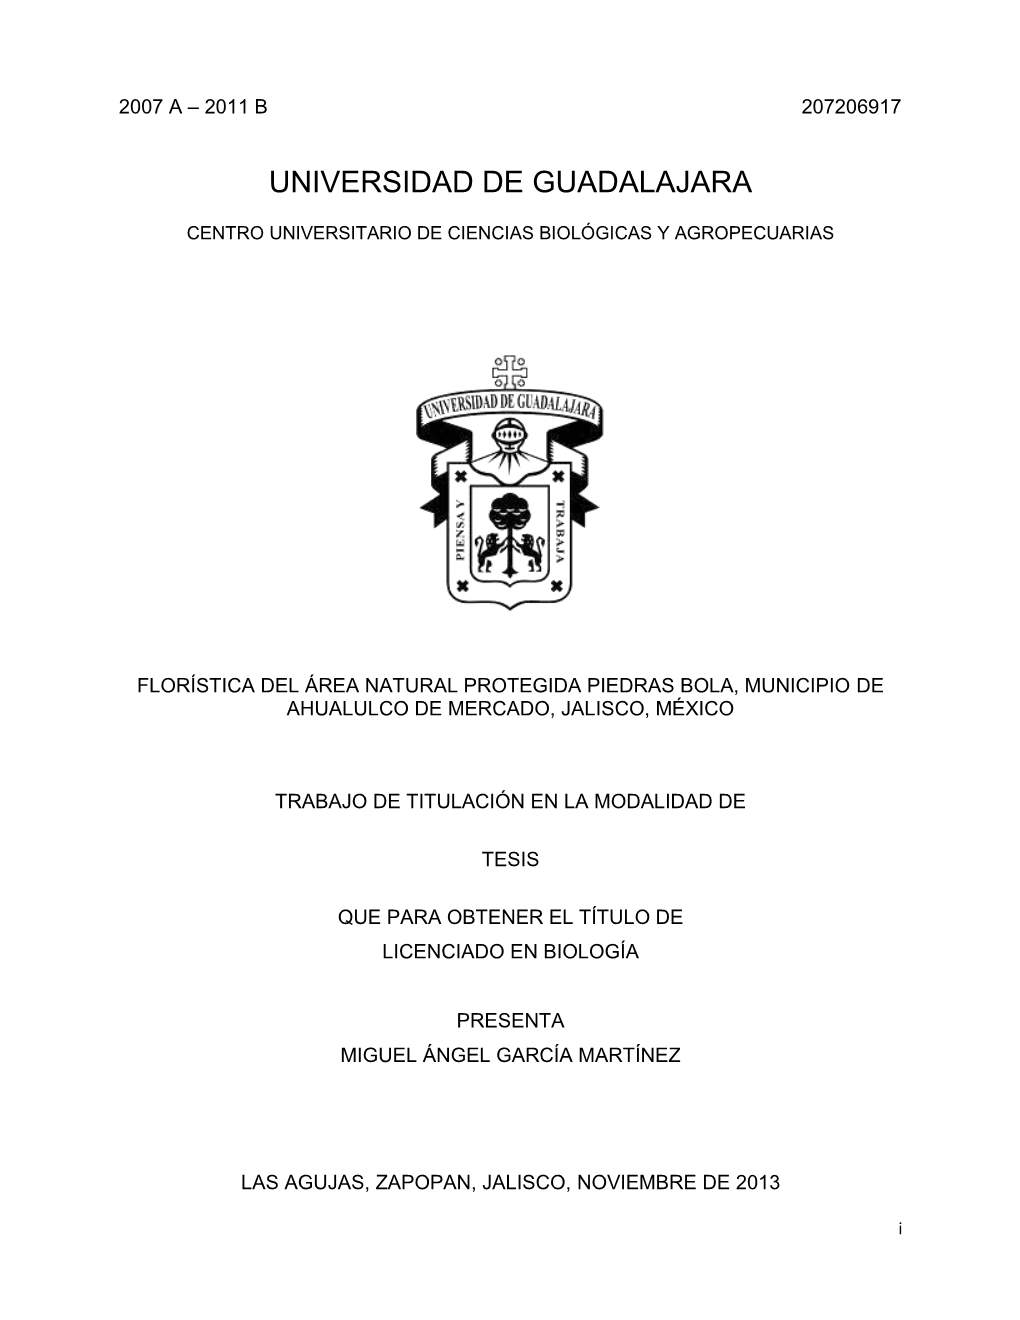 Universidad De Guadalajara